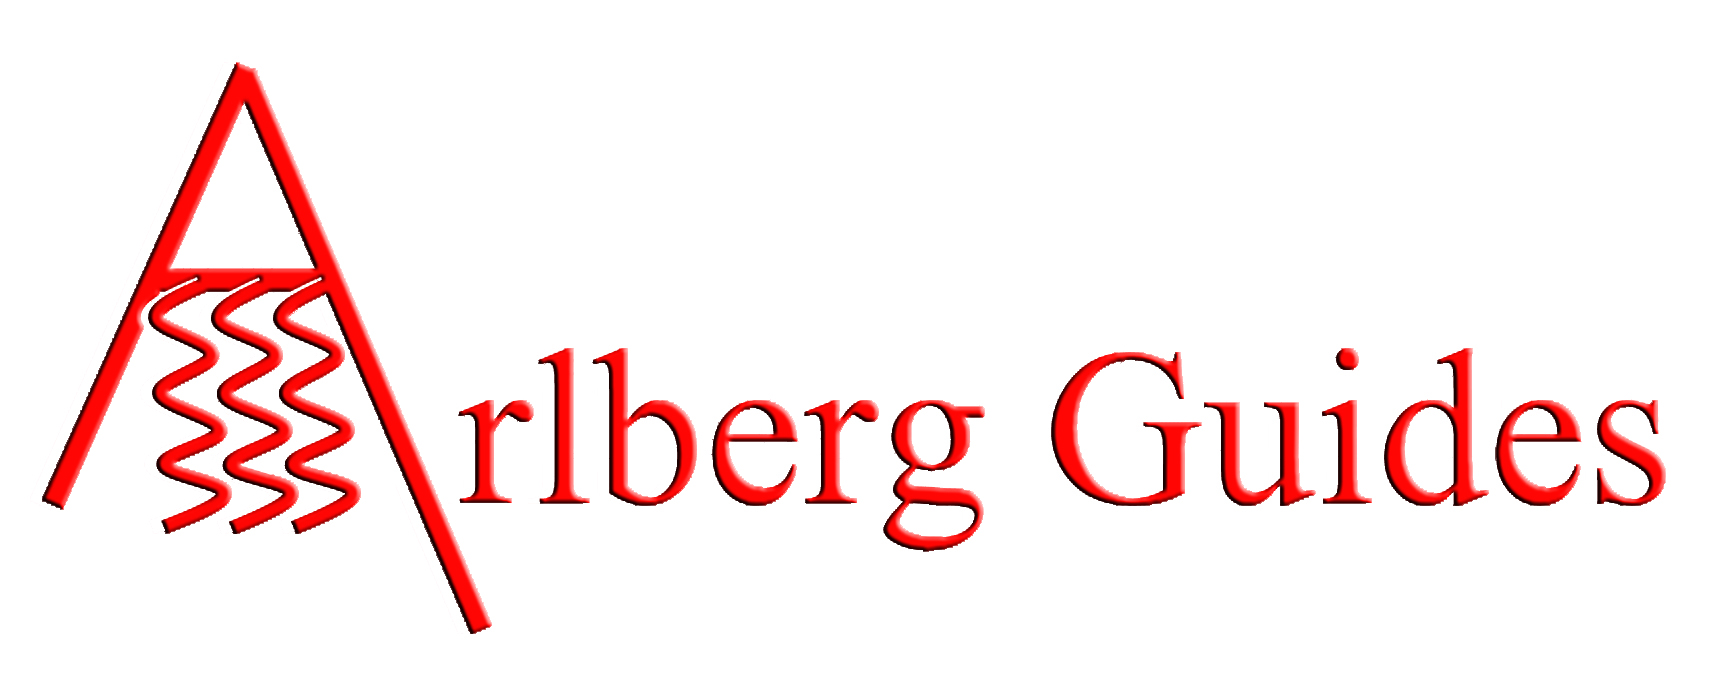 Logo Arlberg Guides - no shades